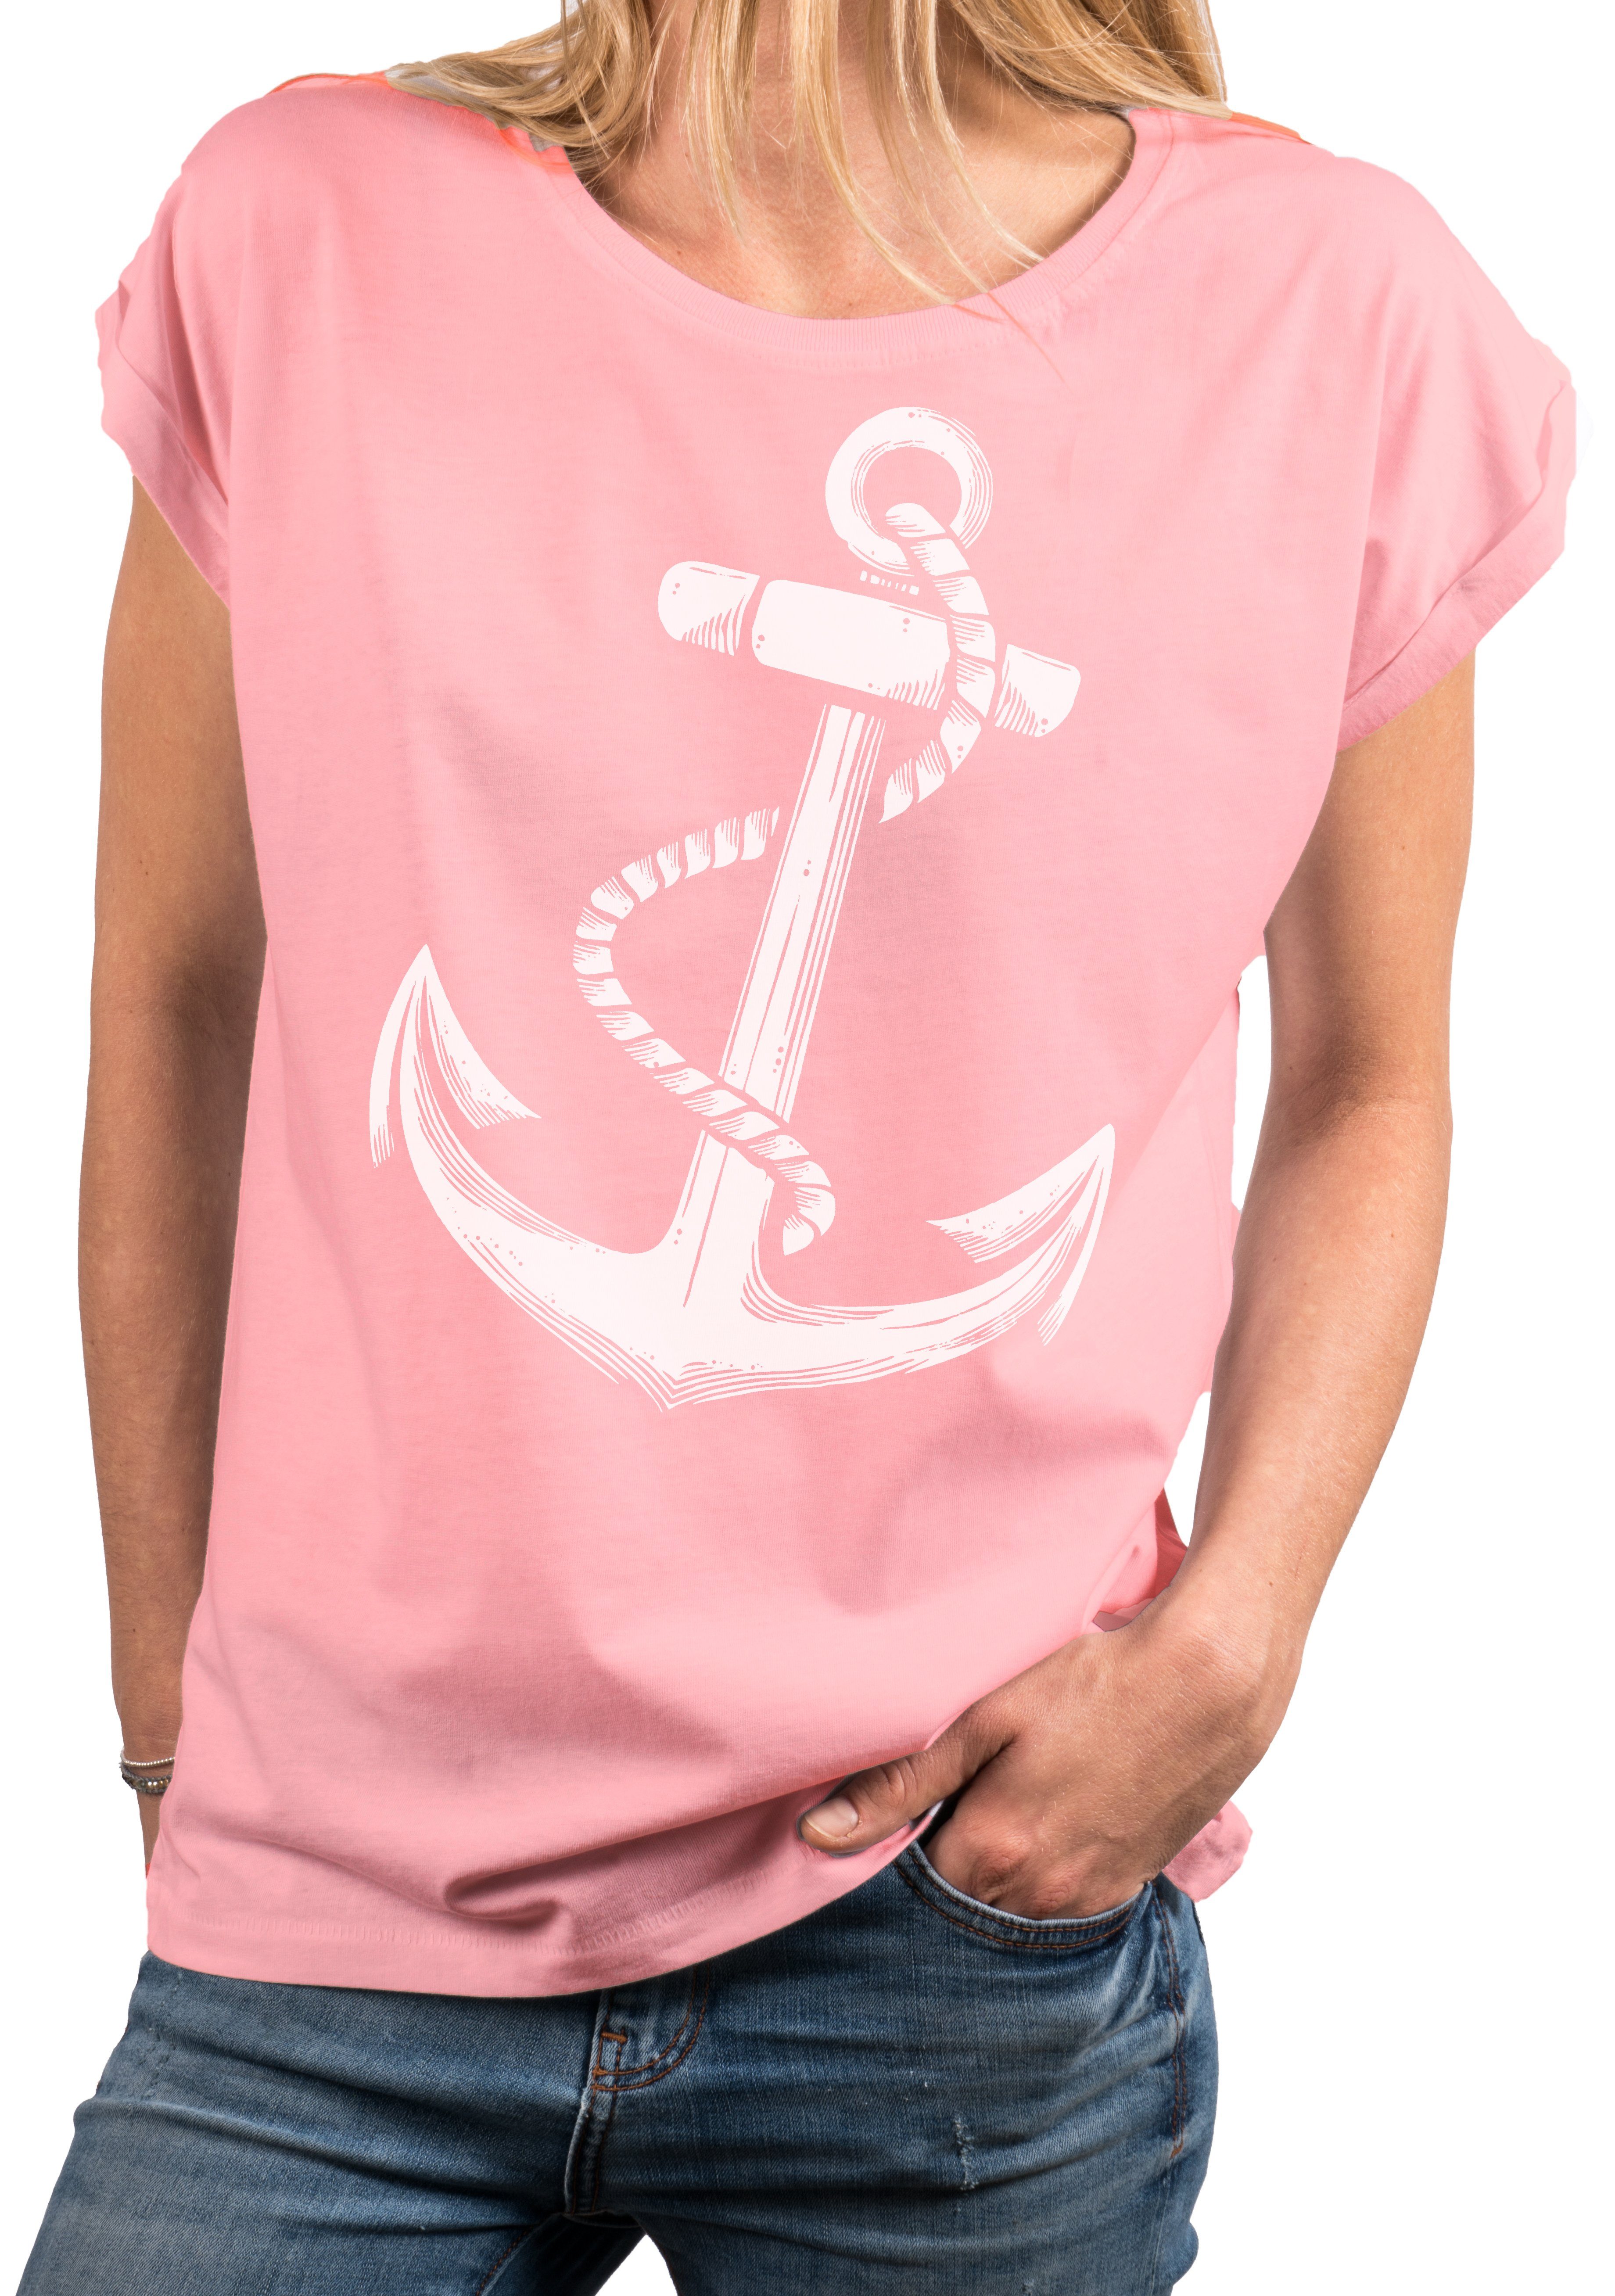 MAKAYA Print-Shirt Anker blau, grau, Frauen große Damen Rundhals, Motiv rosa, Größen Maritime Tunika Sommer Baumwolle, Top schwarz) (Kurzarm, Oberteile aus